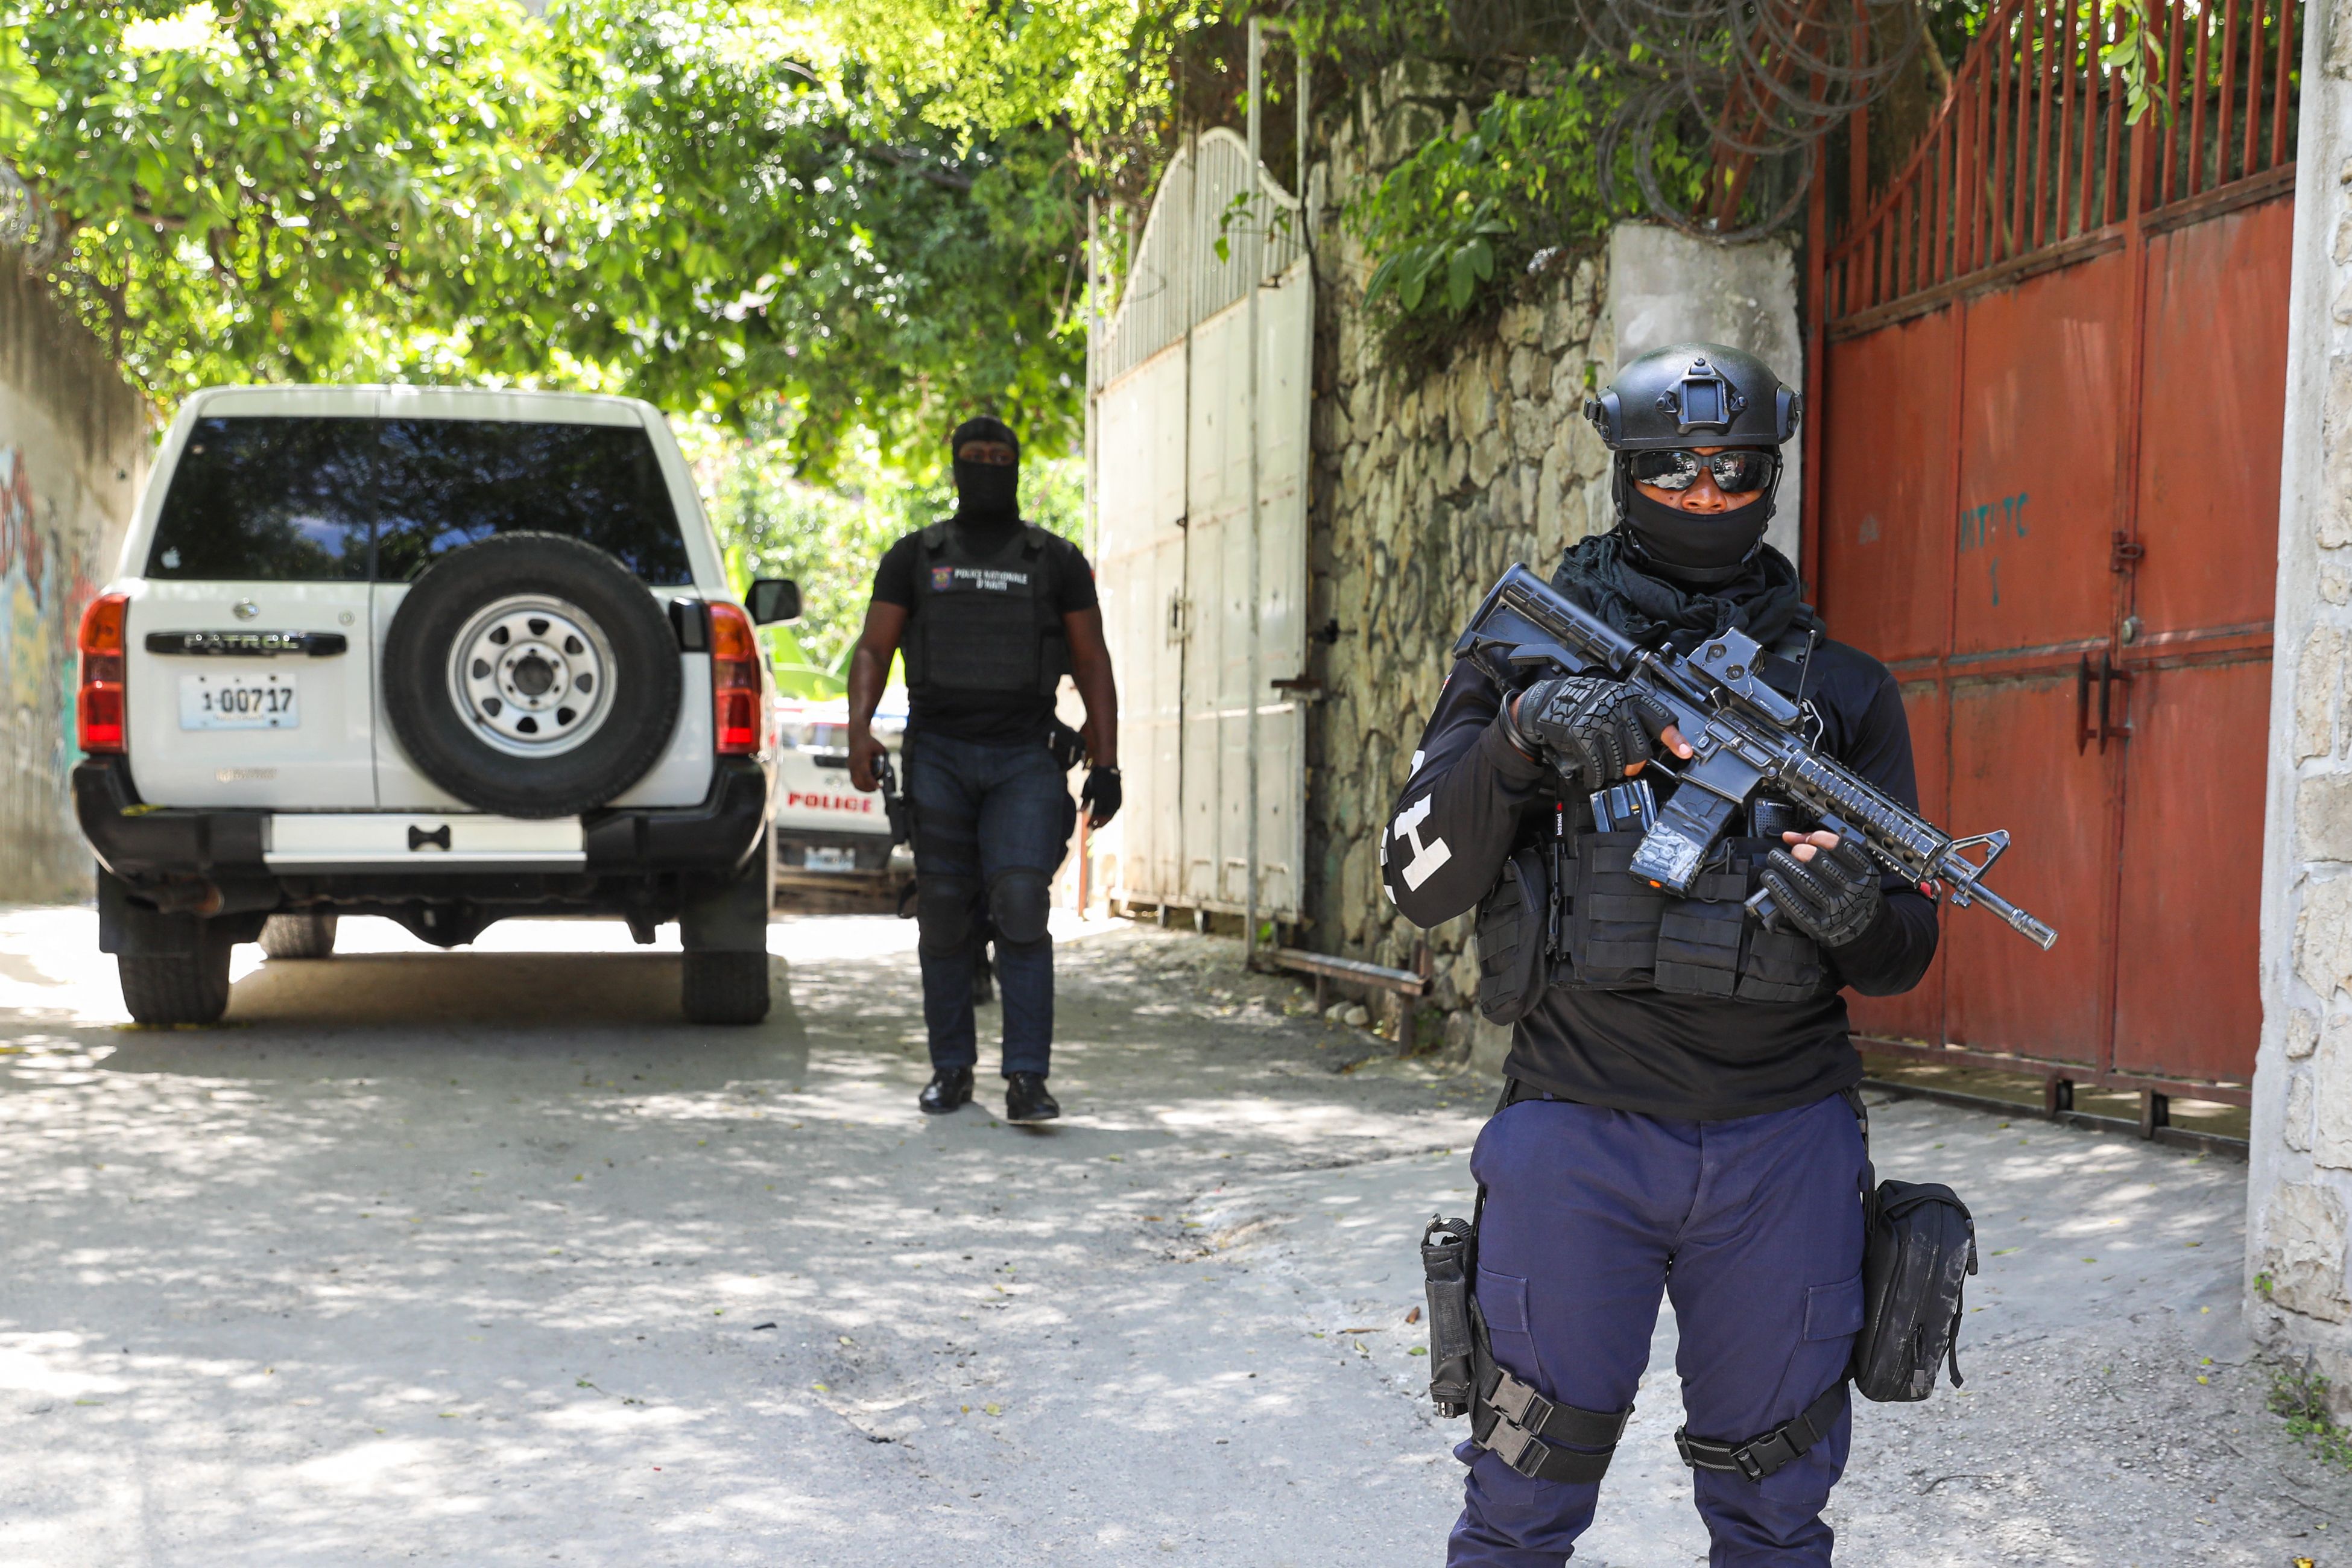 La policía haitiana de guardia frente a la residencia del difunto presidente. Foto: VALERIE BAERISWYL / AFP vía Getty Images